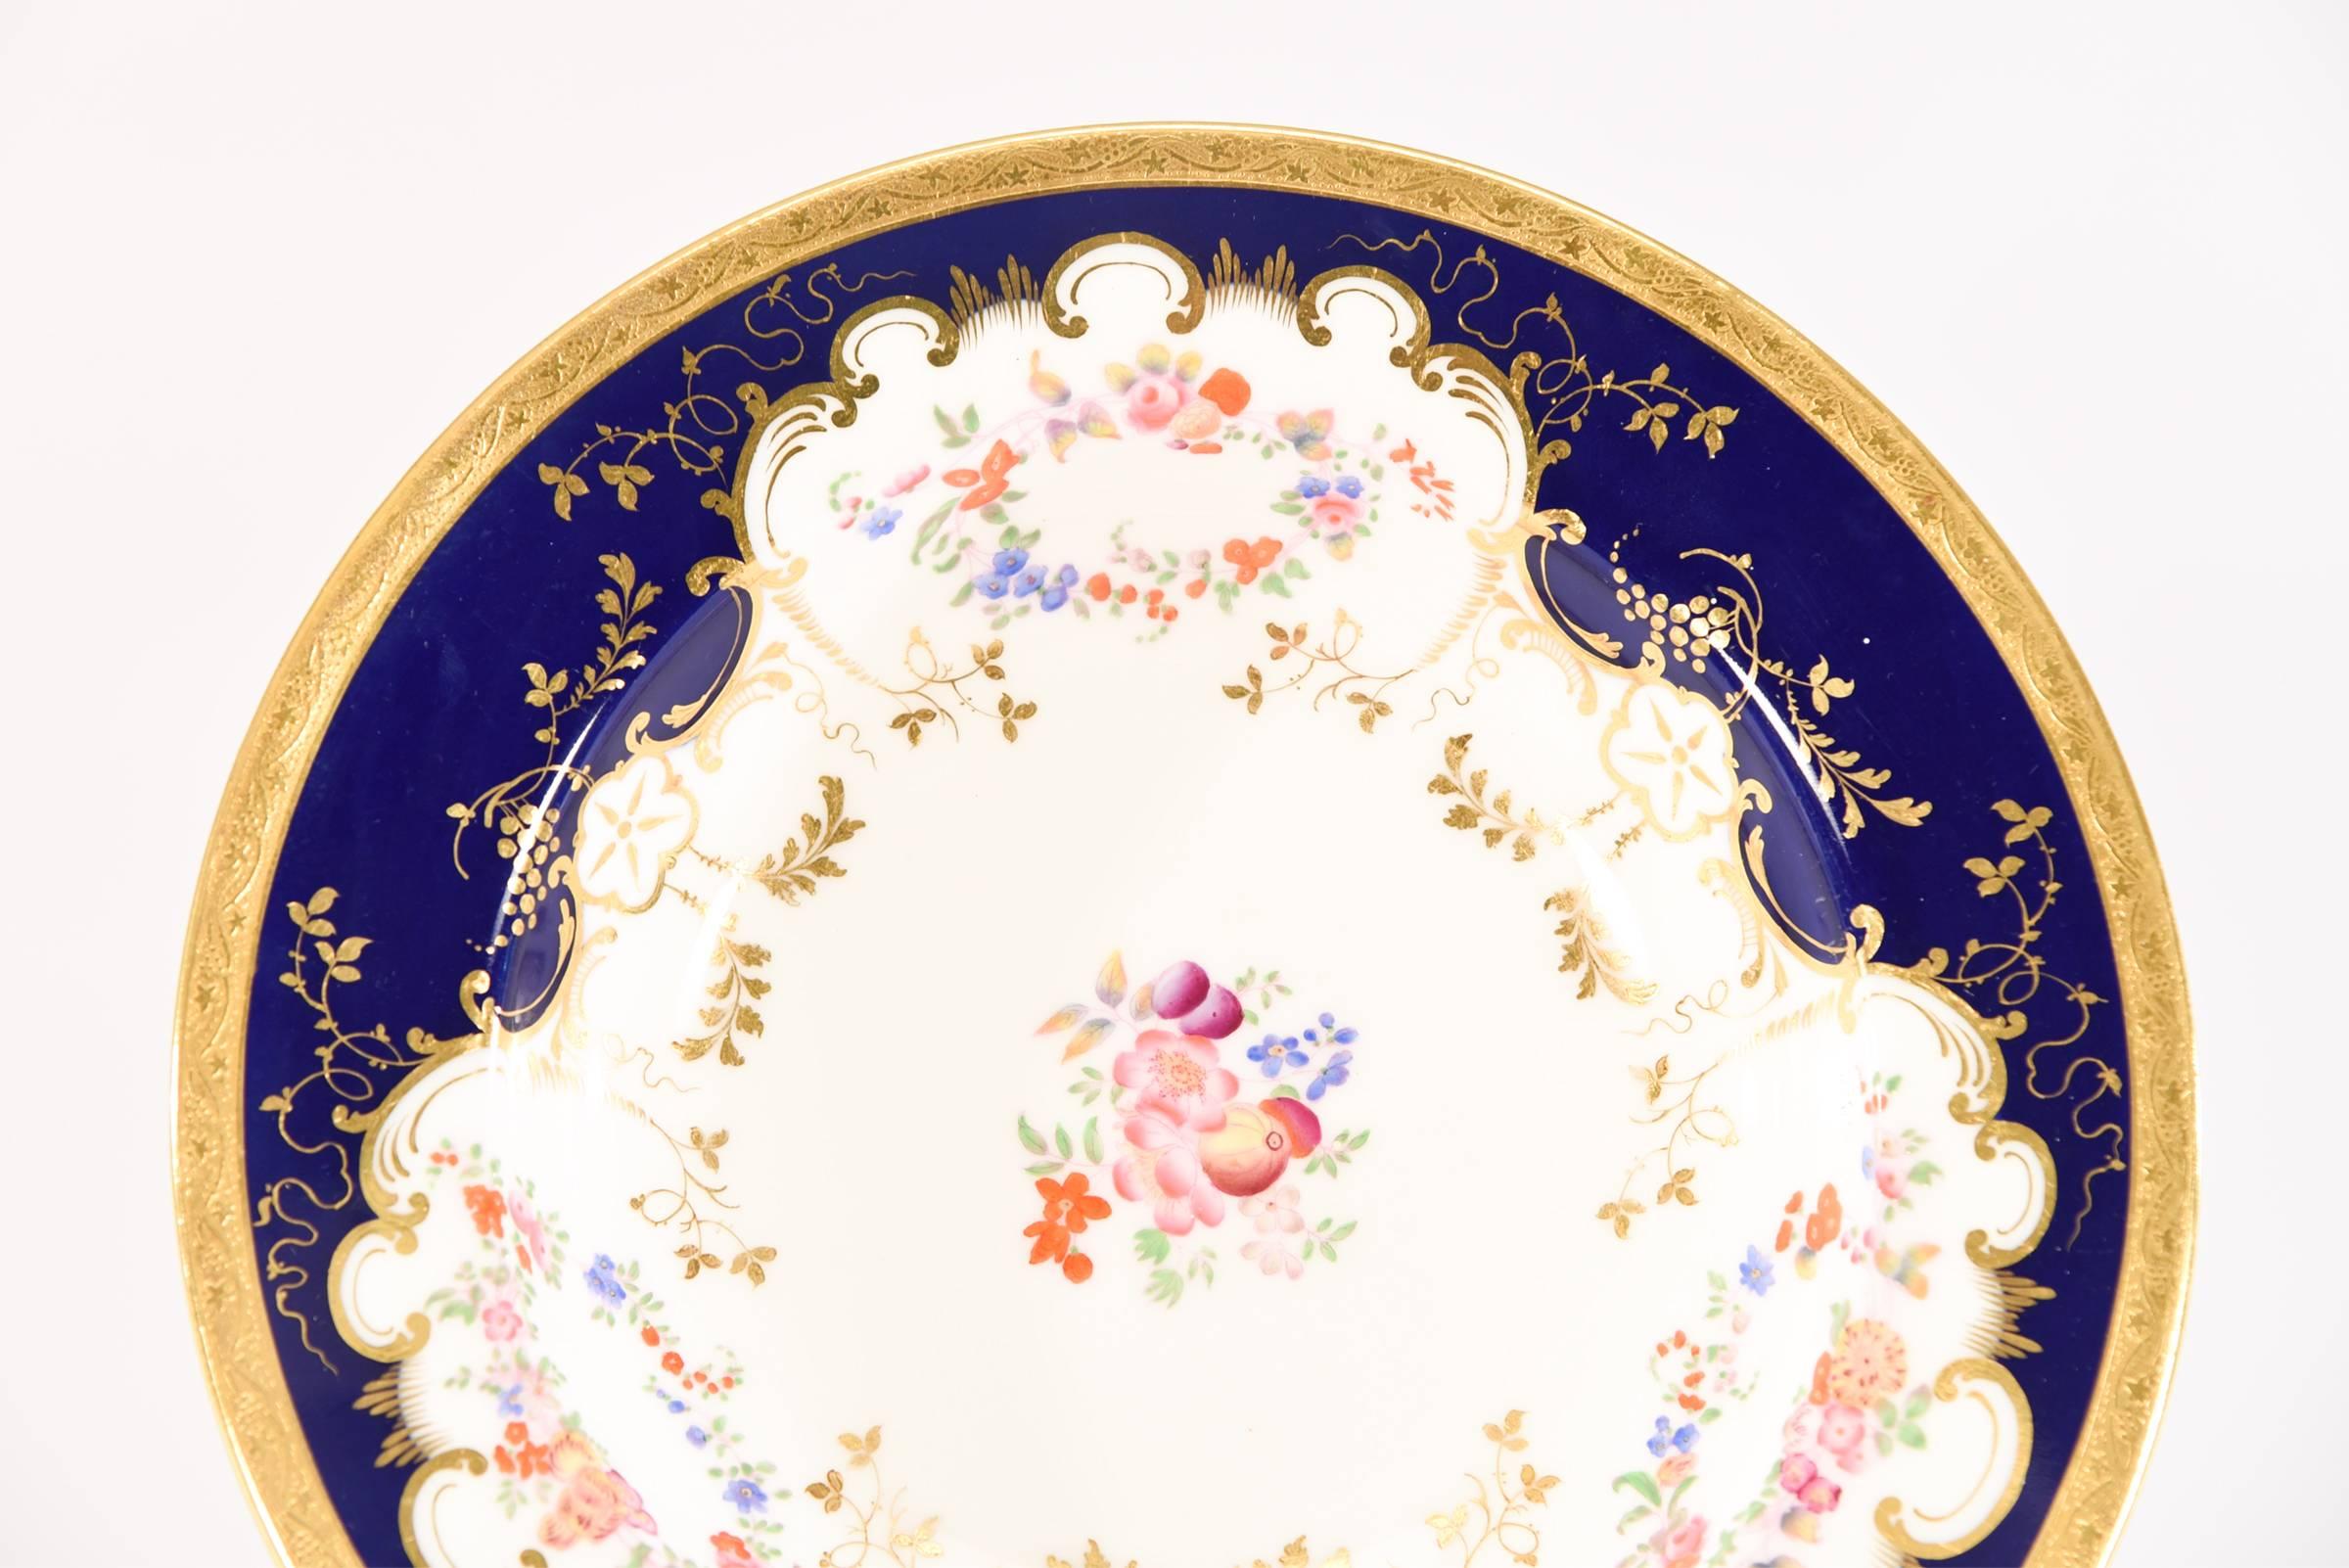 Cet ensemble de 12 bols à soupe à large bord, datant de 1882, est peint à la main et doré, mettant en valeur le talent de l'usine Minton. Vendues par Gilman, Collamore, NY, le Tiffany des grands magasins au début du siècle, elles sont parfaites pour